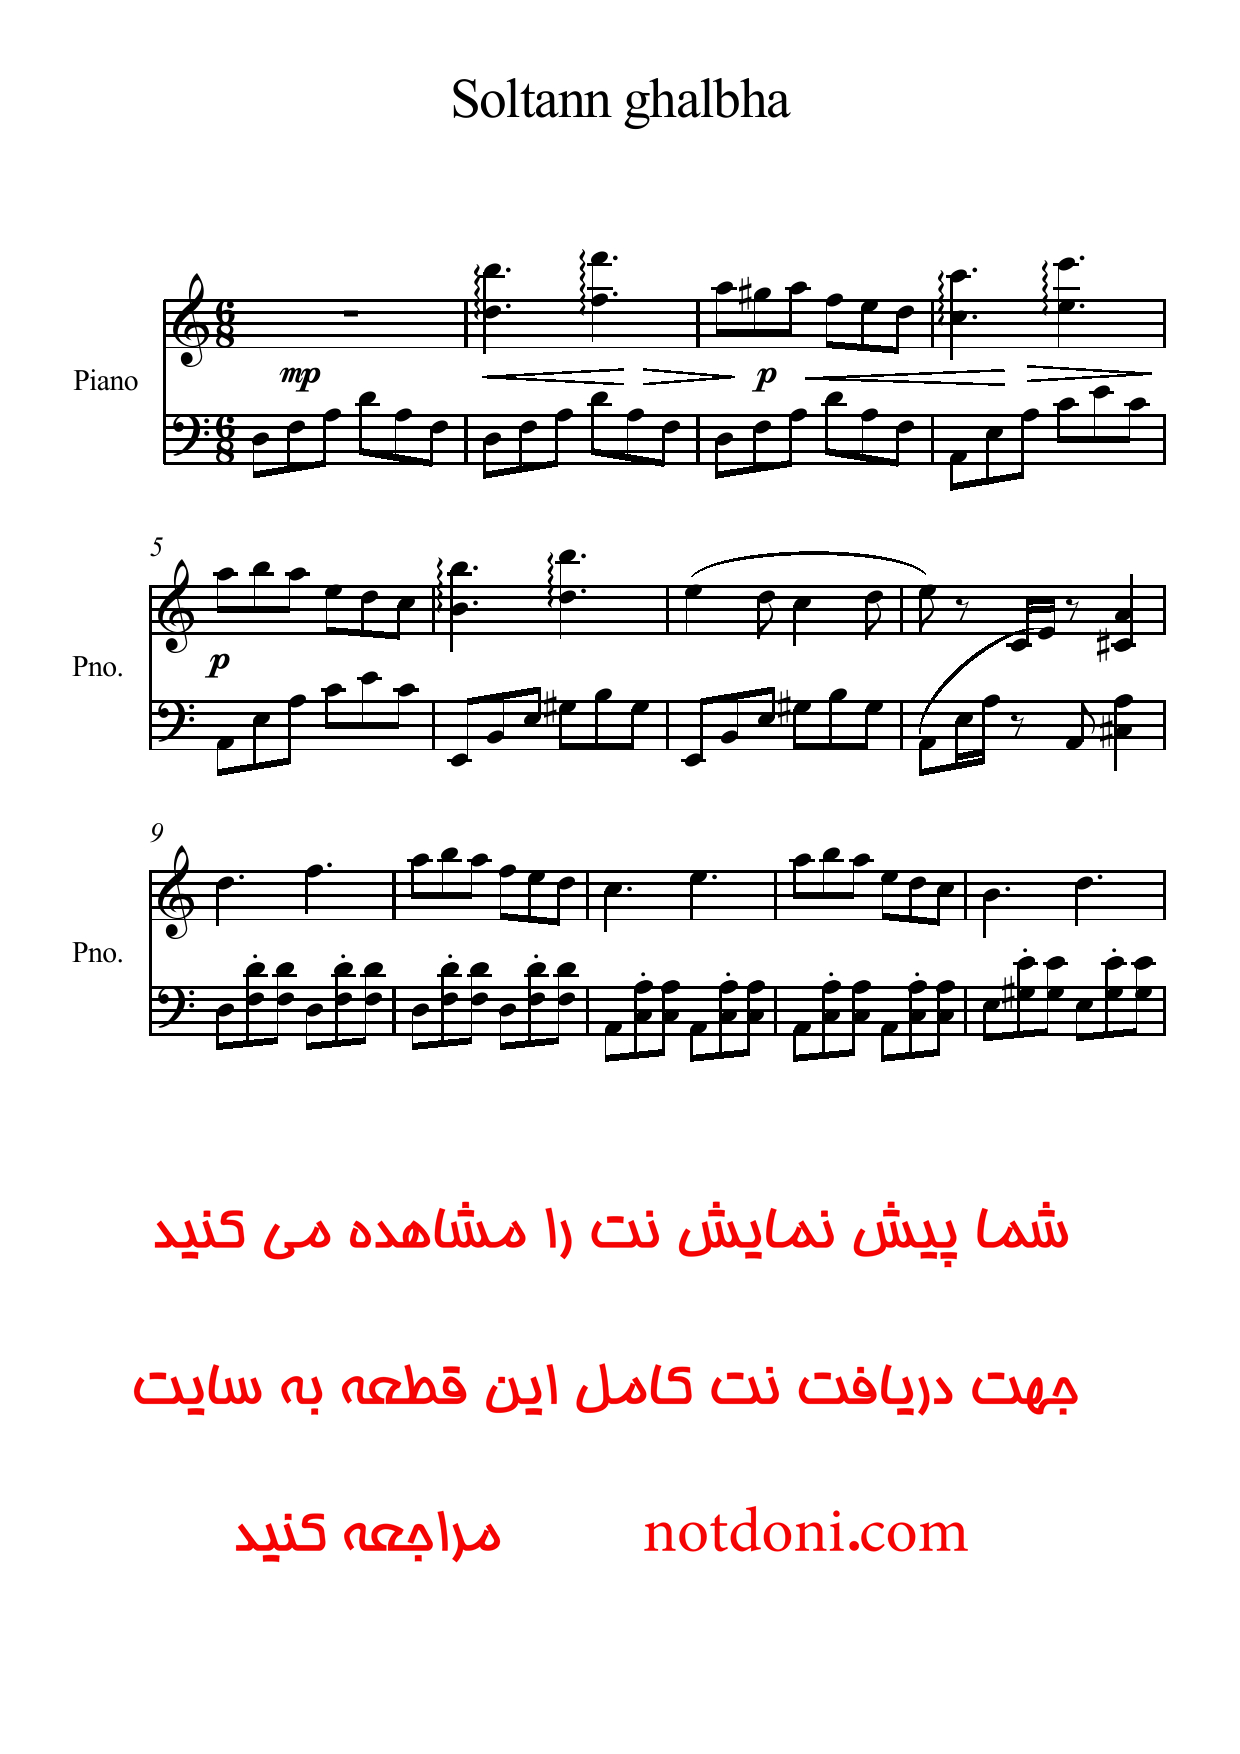 نت پیانوی سلطان قلبها تنظیم سیاوش اسدی